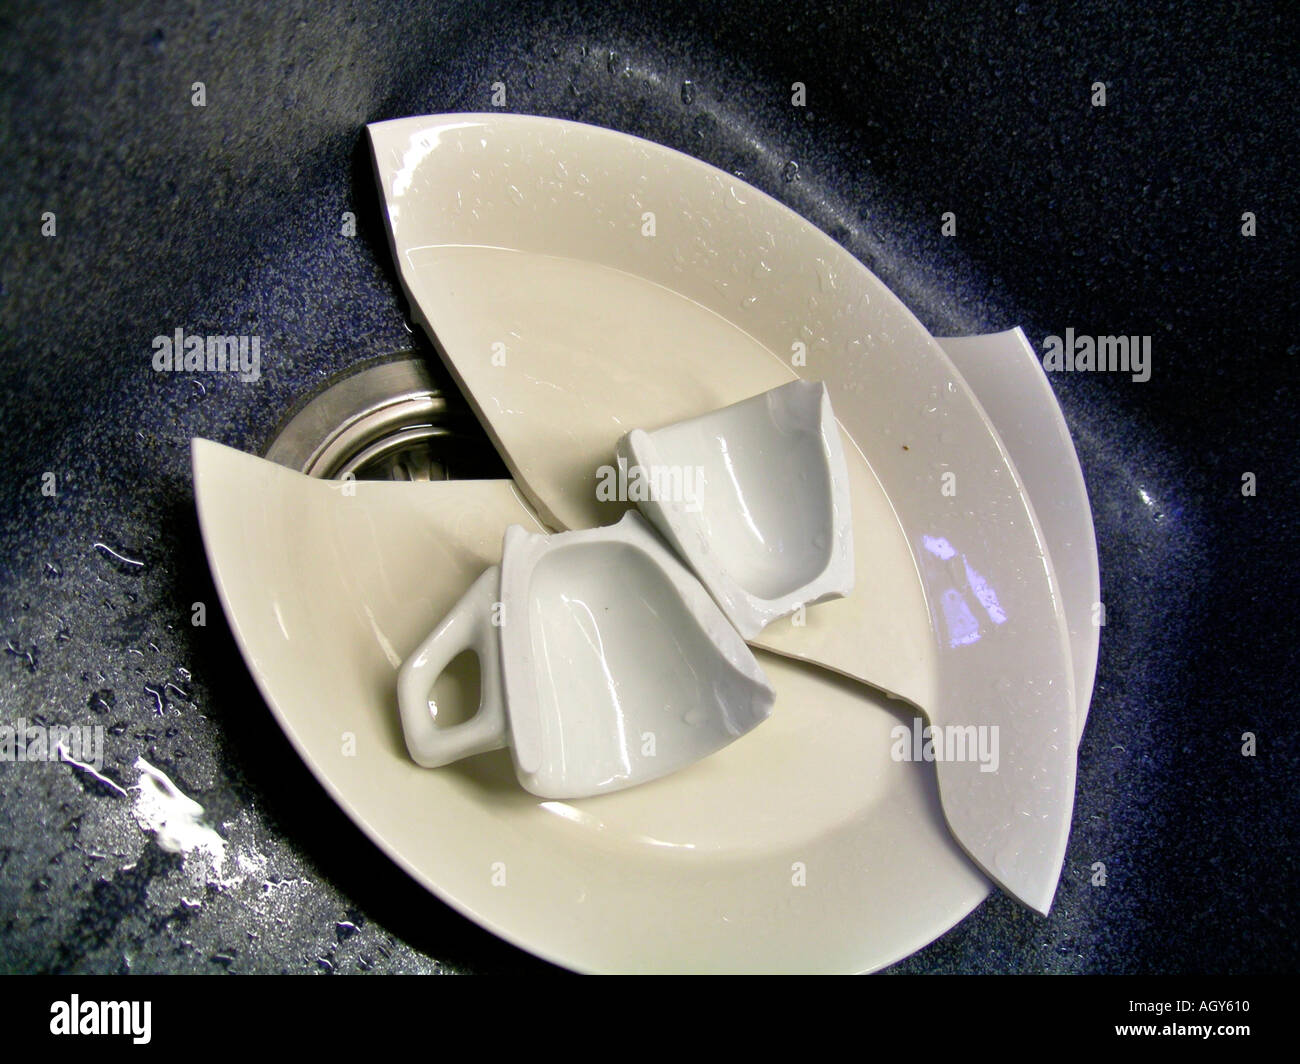 La vaisselle cassée dans un évier Photo Stock - Alamy